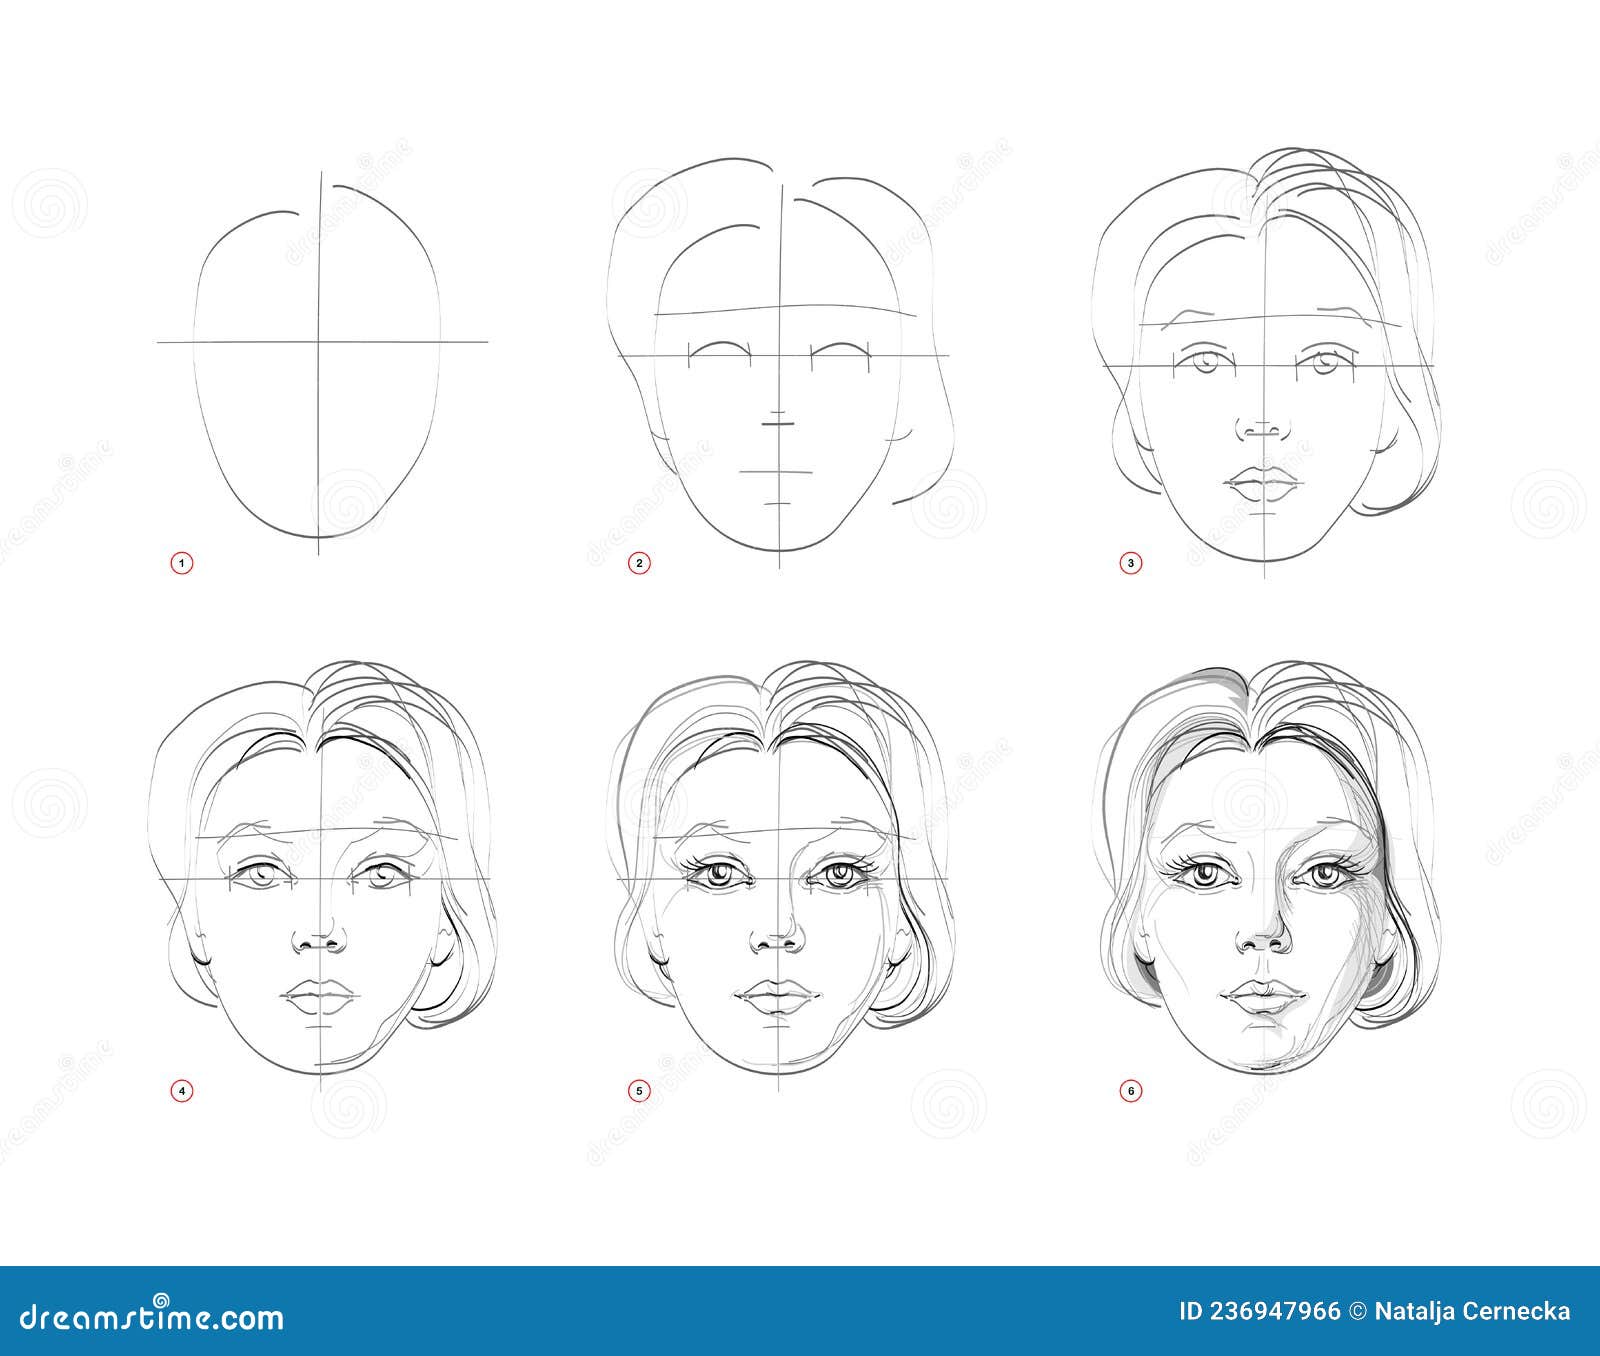 Qualquer pessoa pode desenhar rostos. Tutorial de desenho passo-a